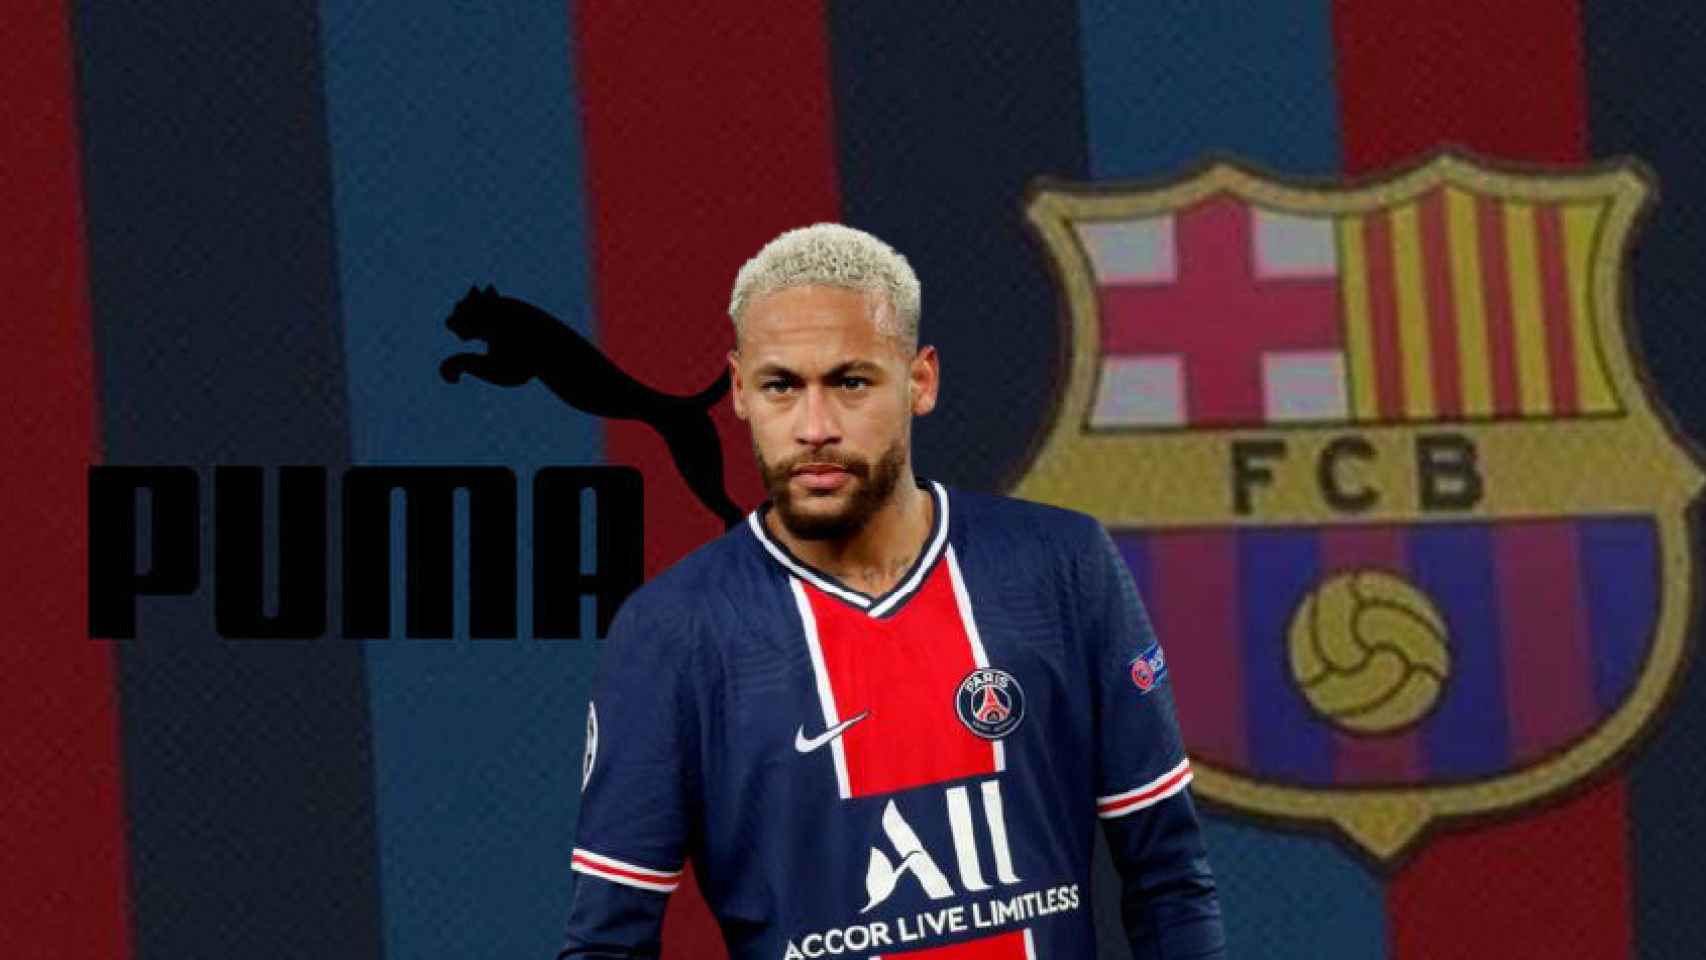 Puma asalta el mercado: fichaje de Neymar, acuerdo en Fórmula 1 y un sueño con el Barça